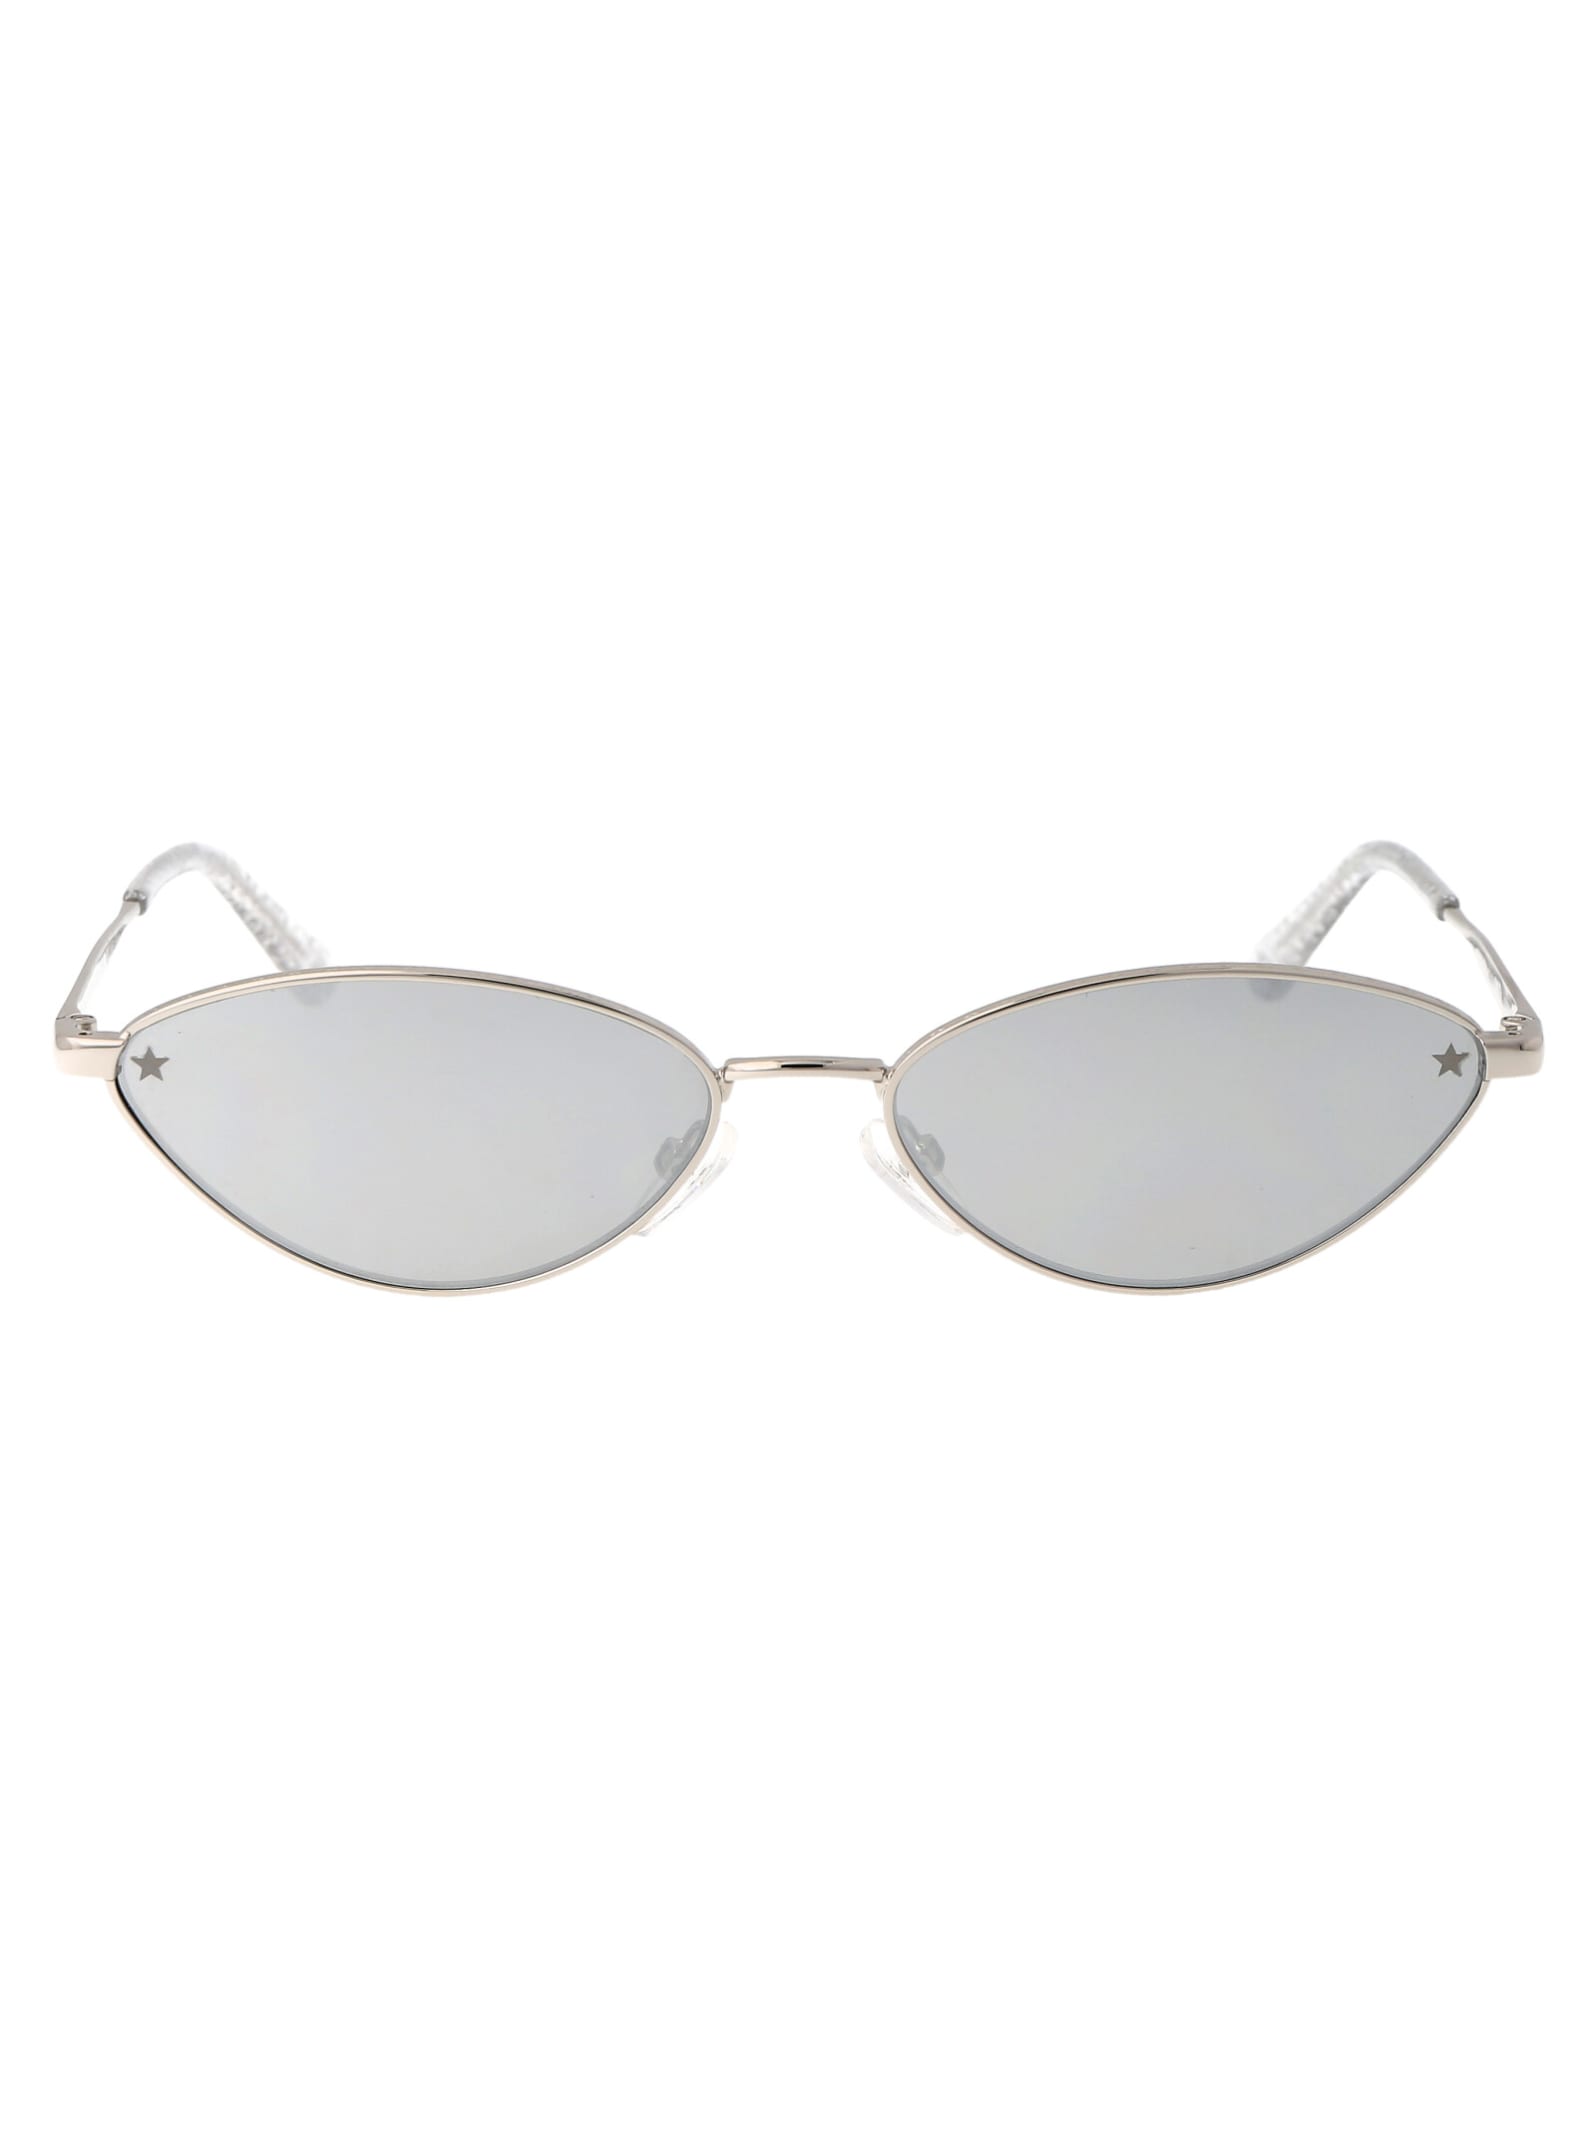 Cf 7034/s Sunglasses